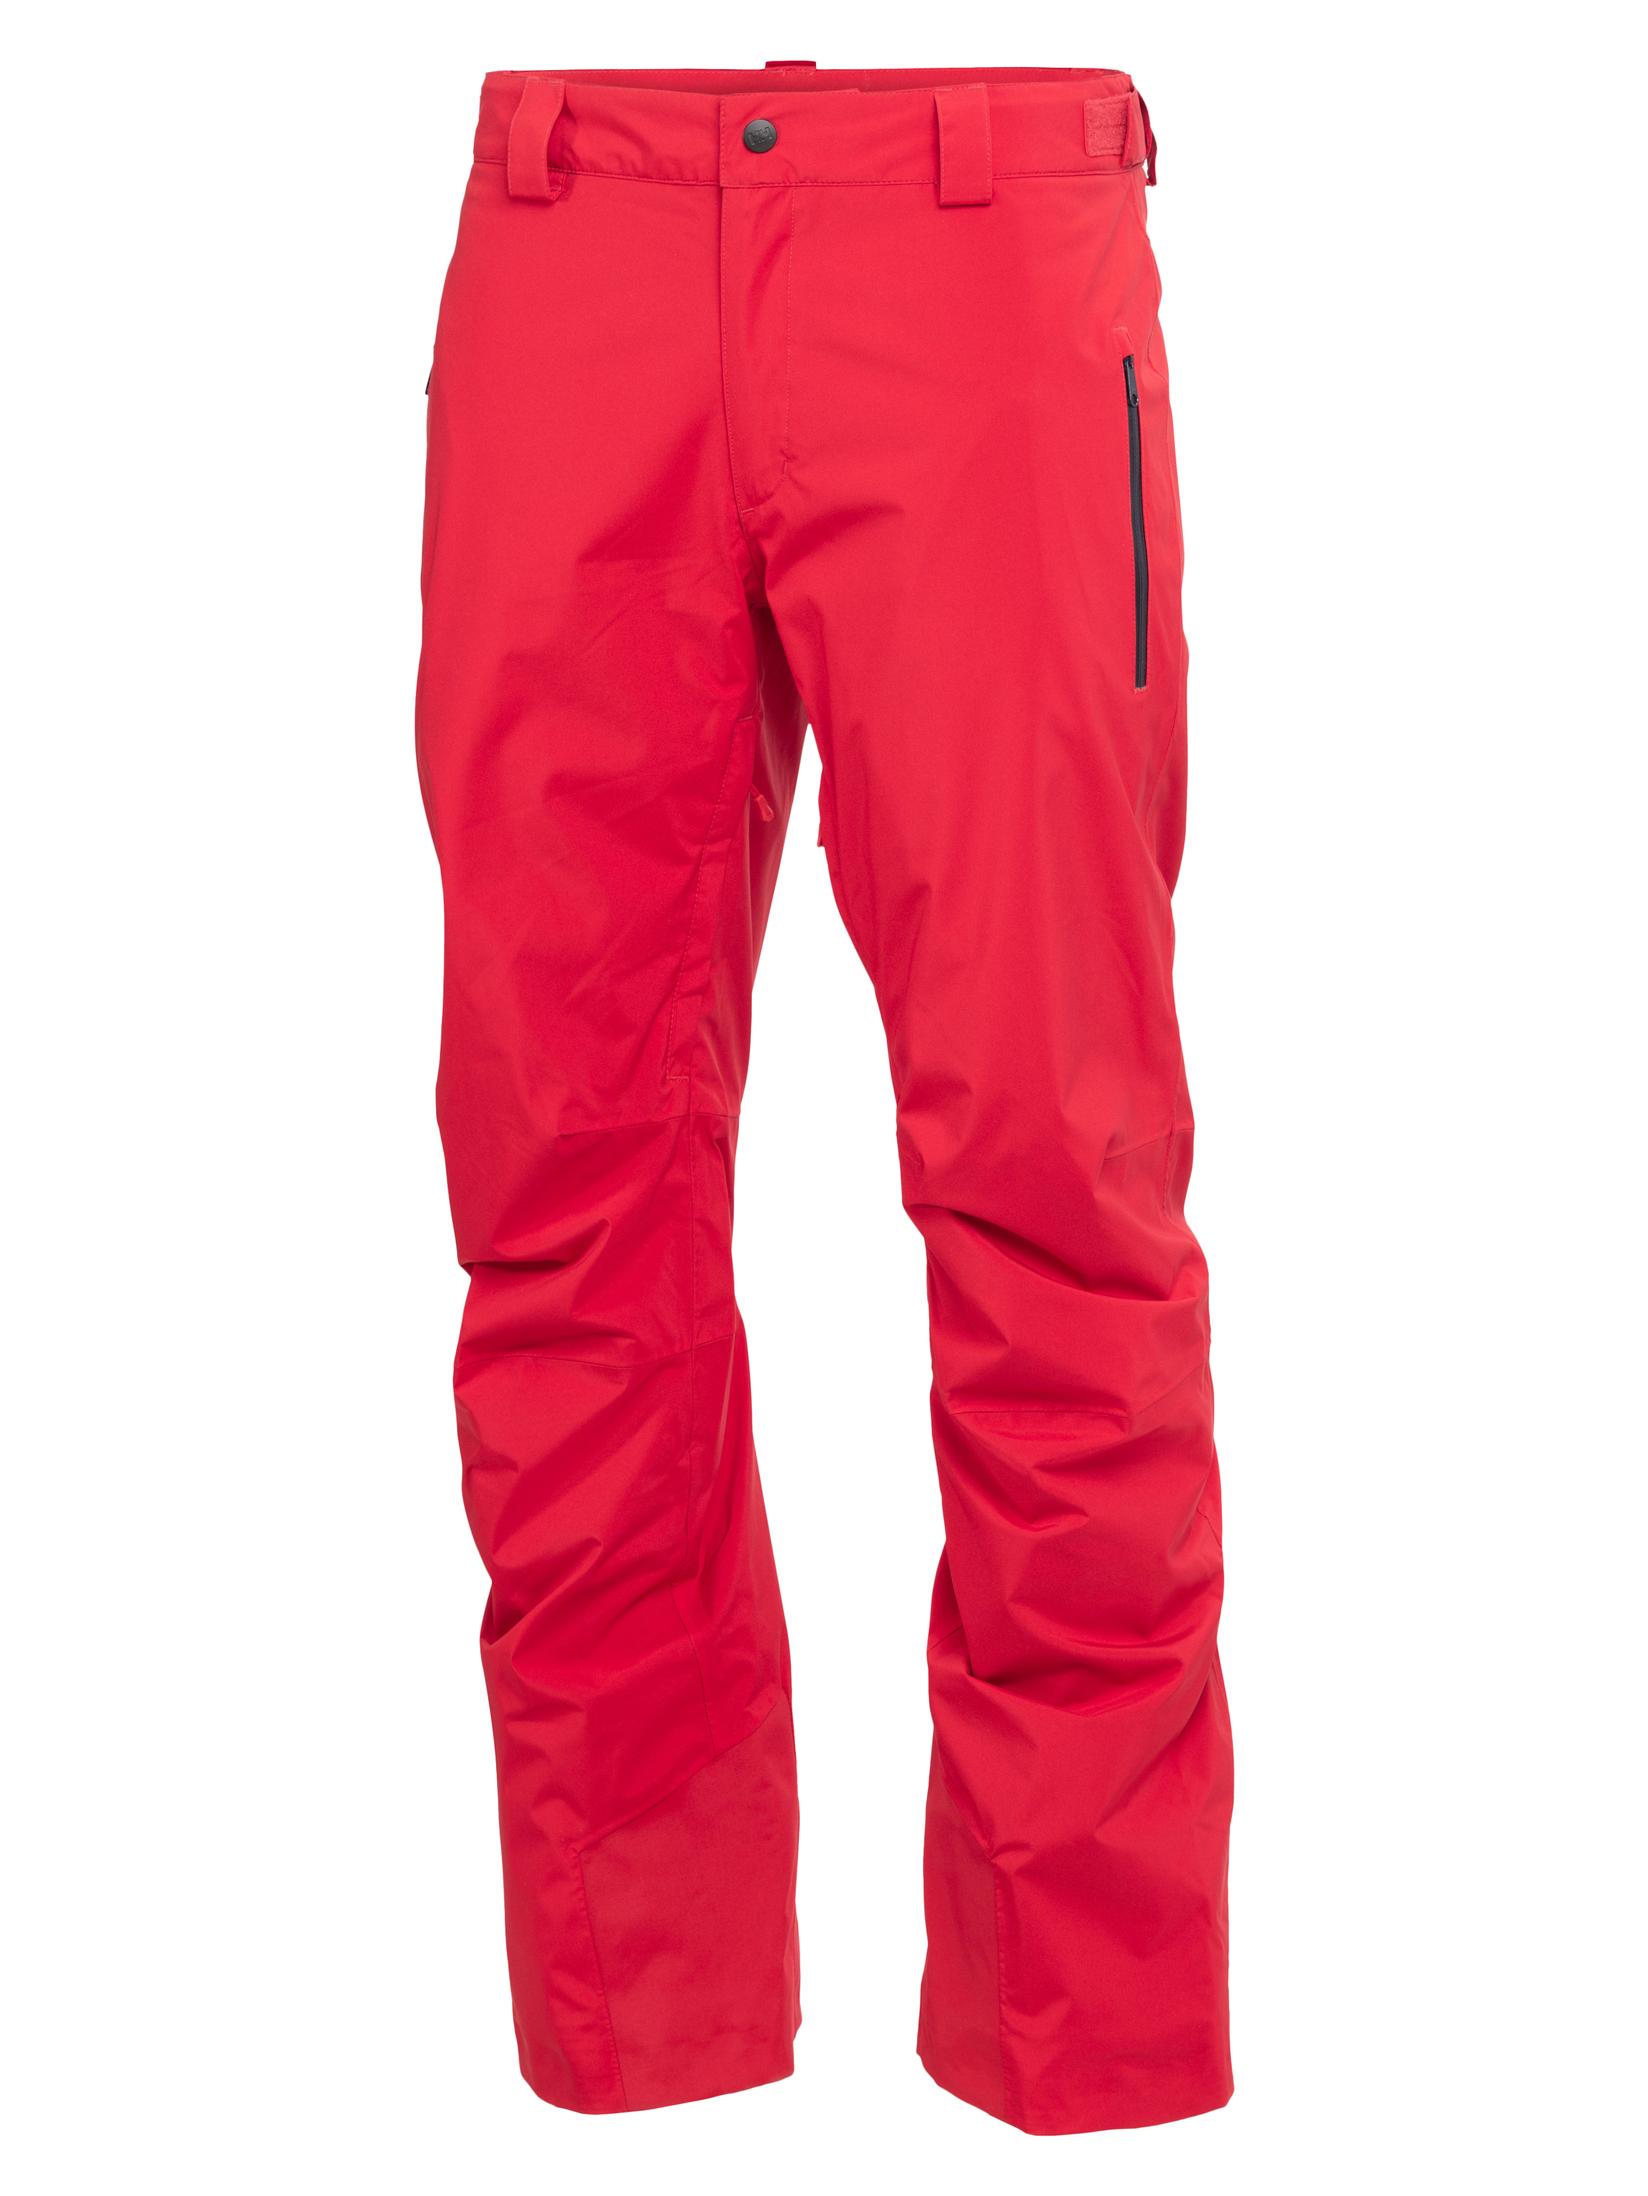 Selected image for HELLY HANSEN Muške ski pantalone Legendary Insulat HH-65704 crvene